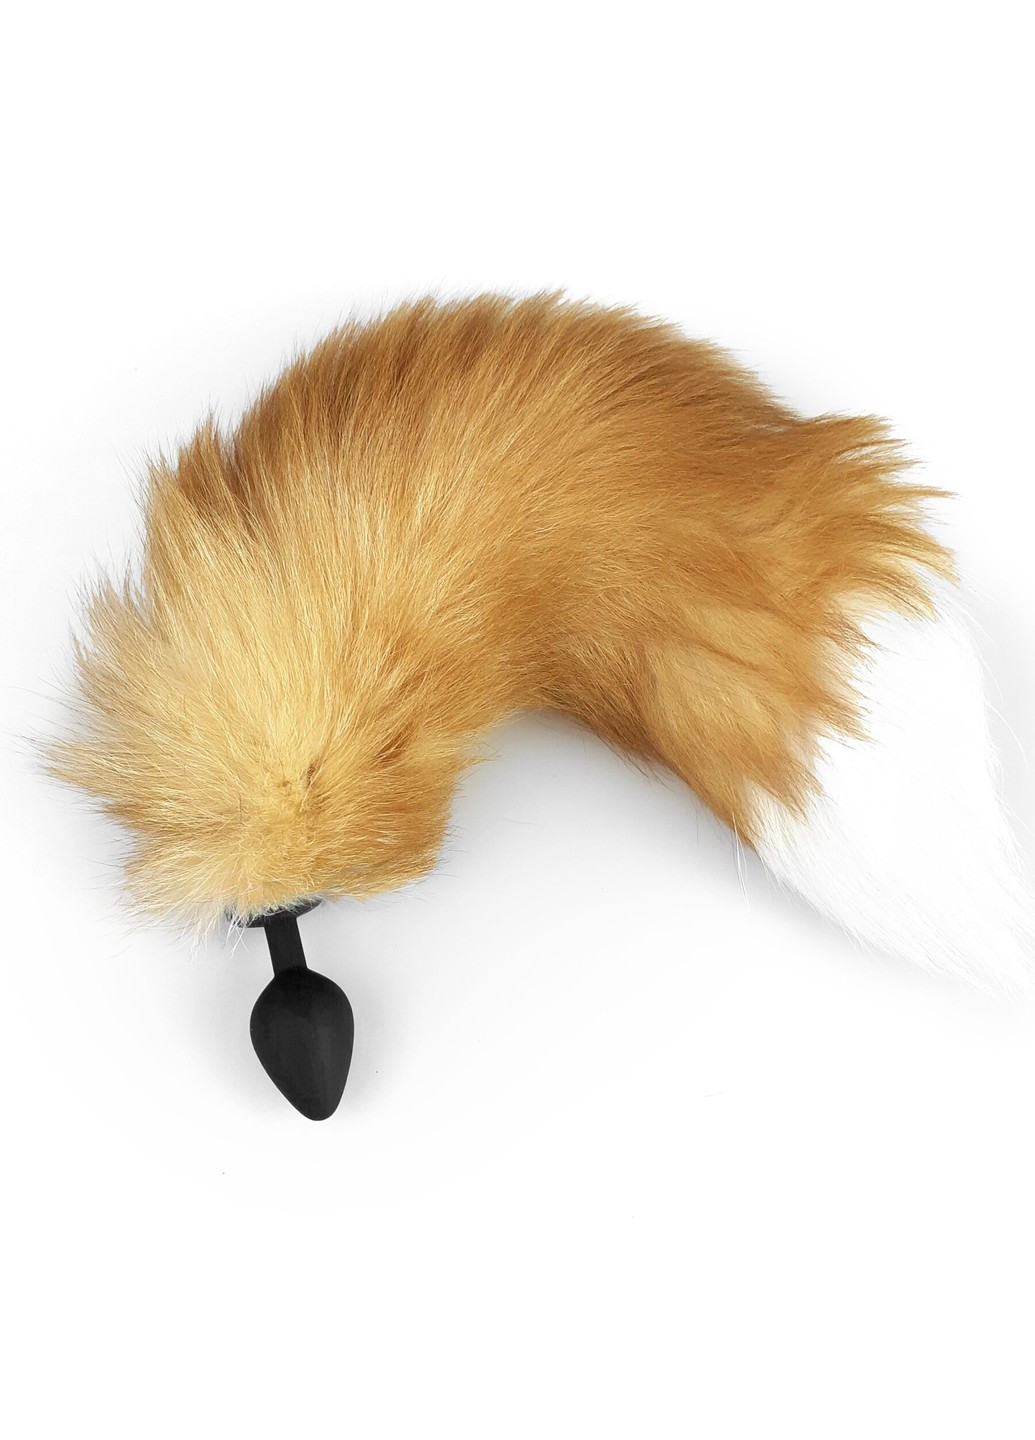 Силиконовая анальная пробка с хвостом из натурального меха size M Foxy fox Art of Sex (254973610)